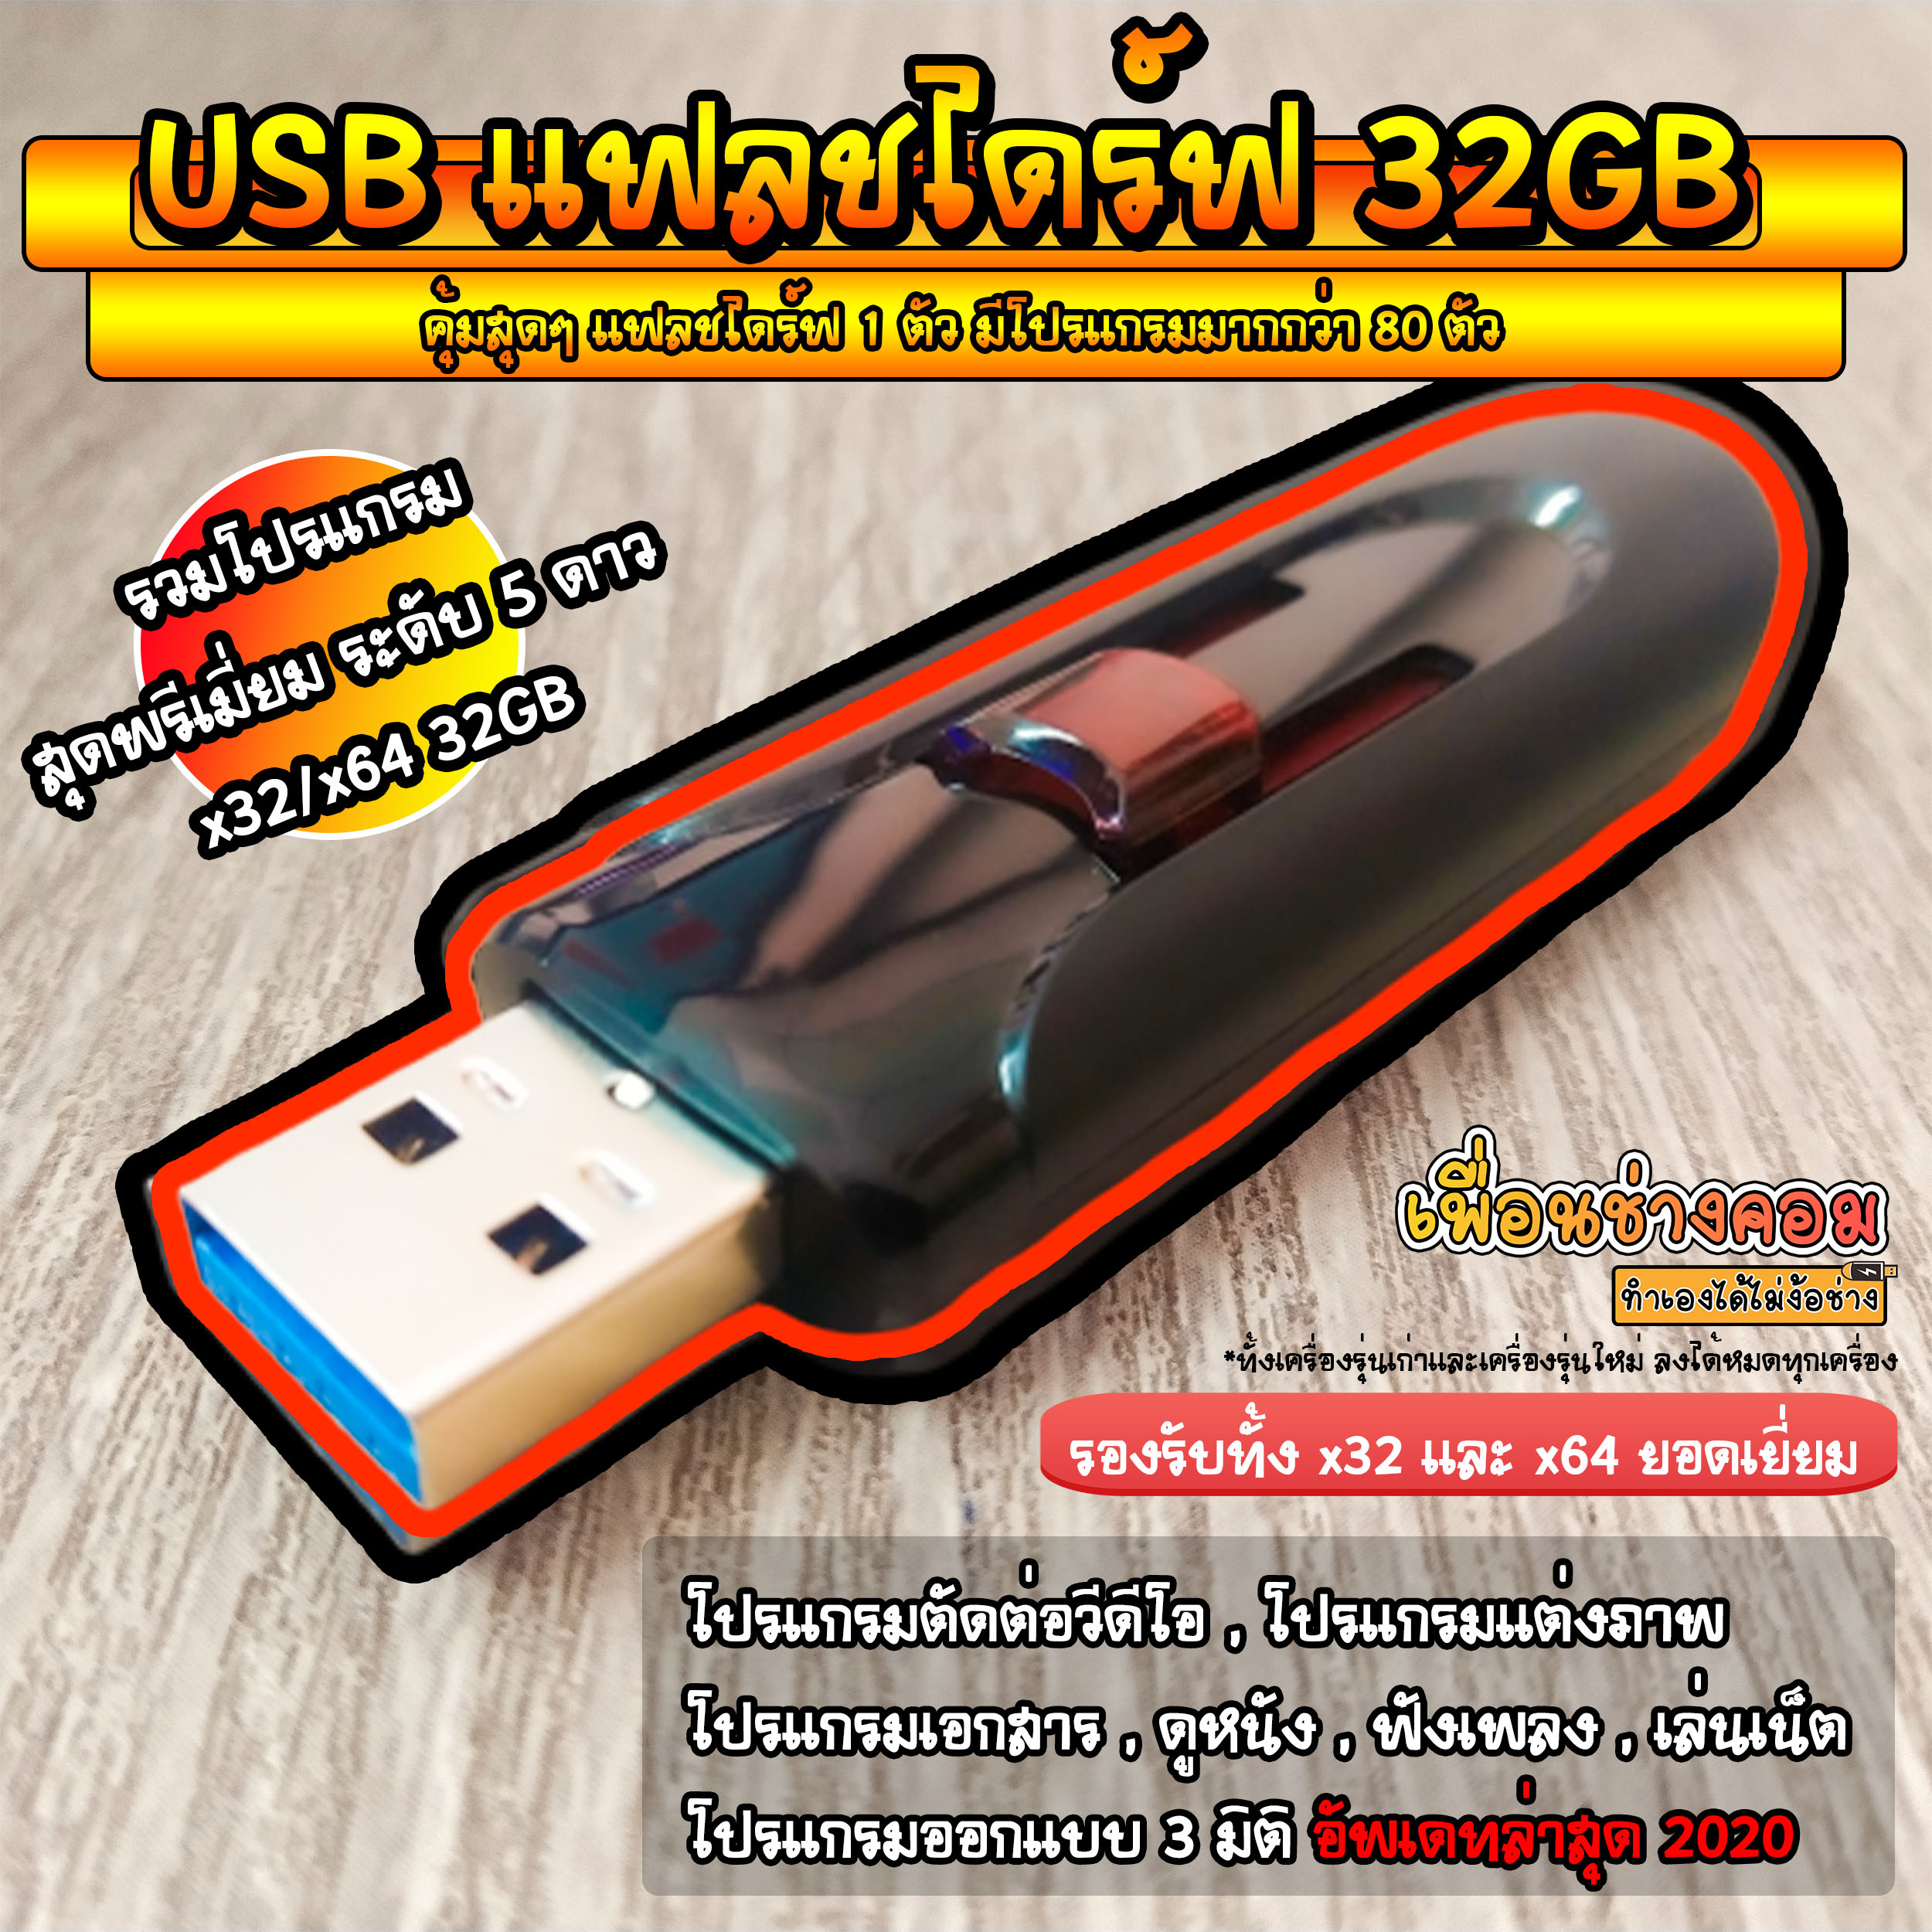 USB แฟลชไดร์ รวมโปรแกรม อัพเดทล่าสุด ธันวาคม 2020 | 32GB*